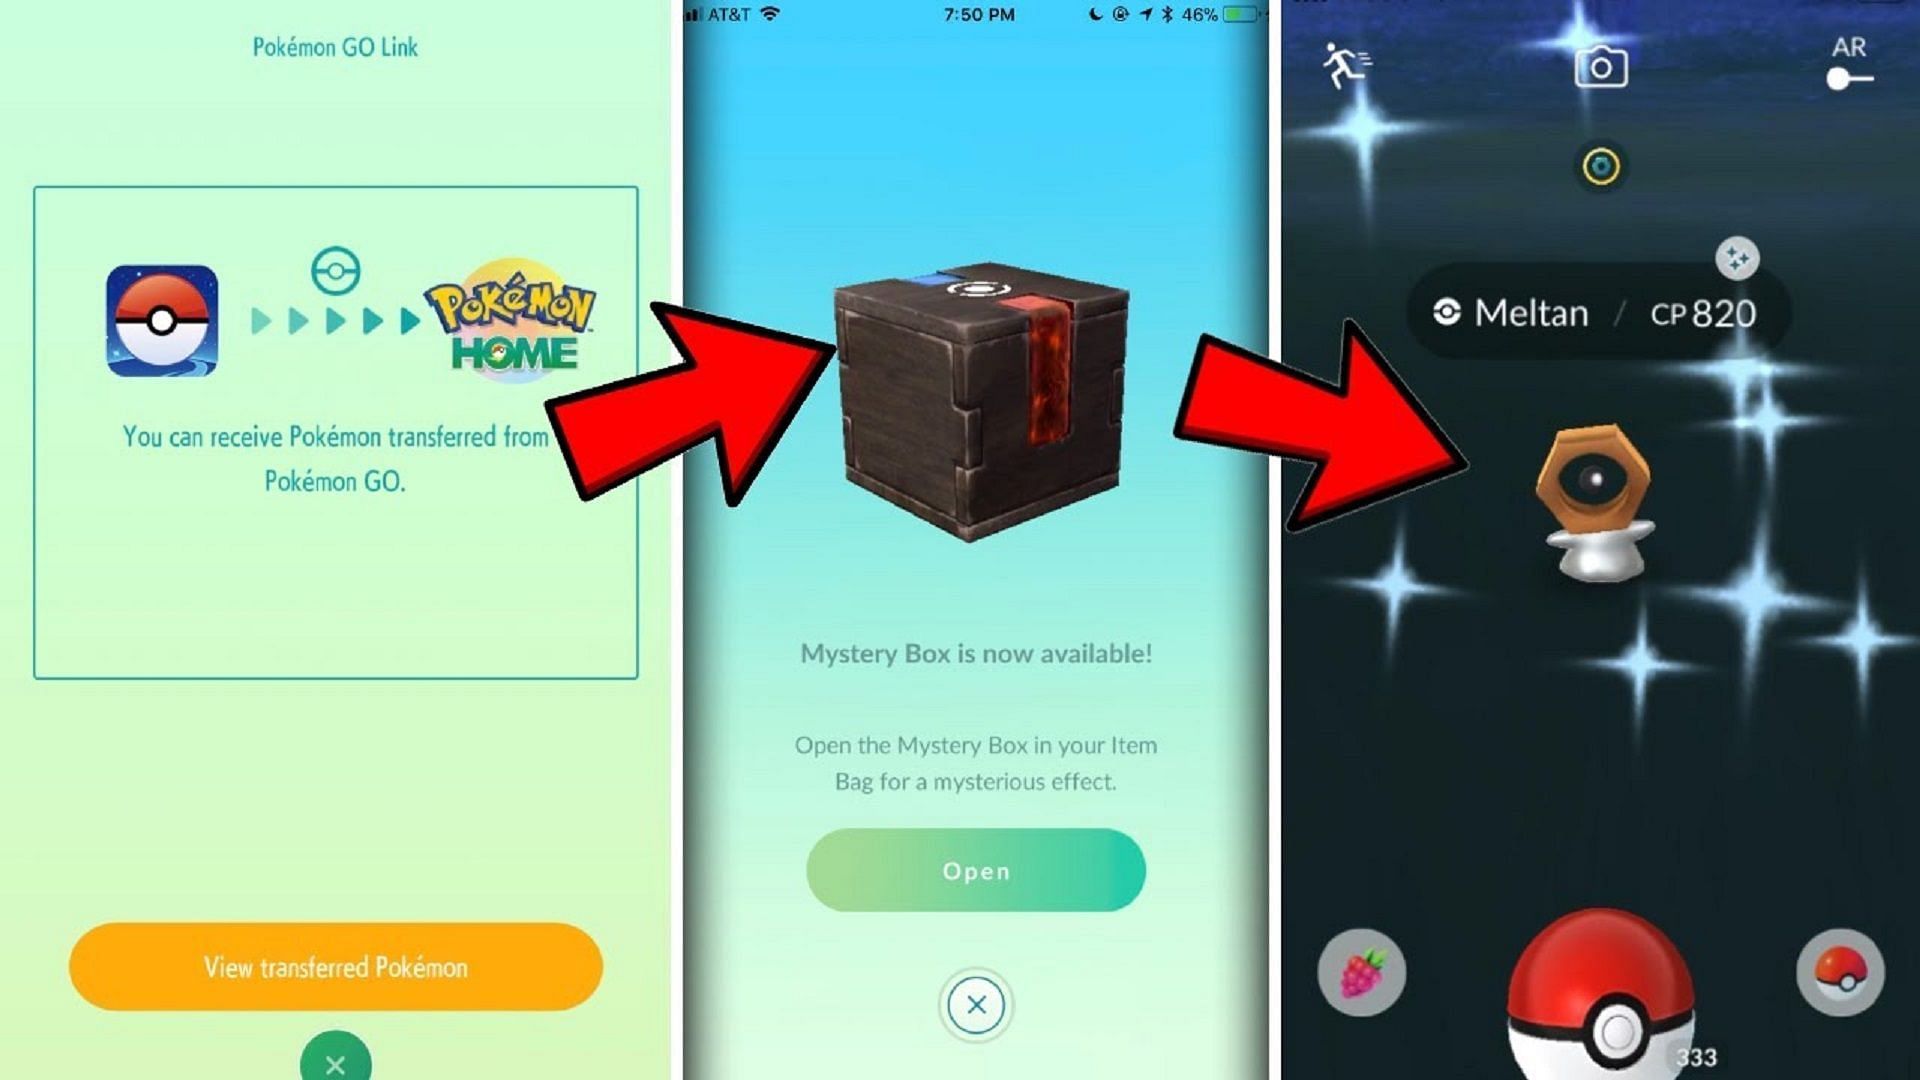 Pokémon Go: The Mystery Box Explained